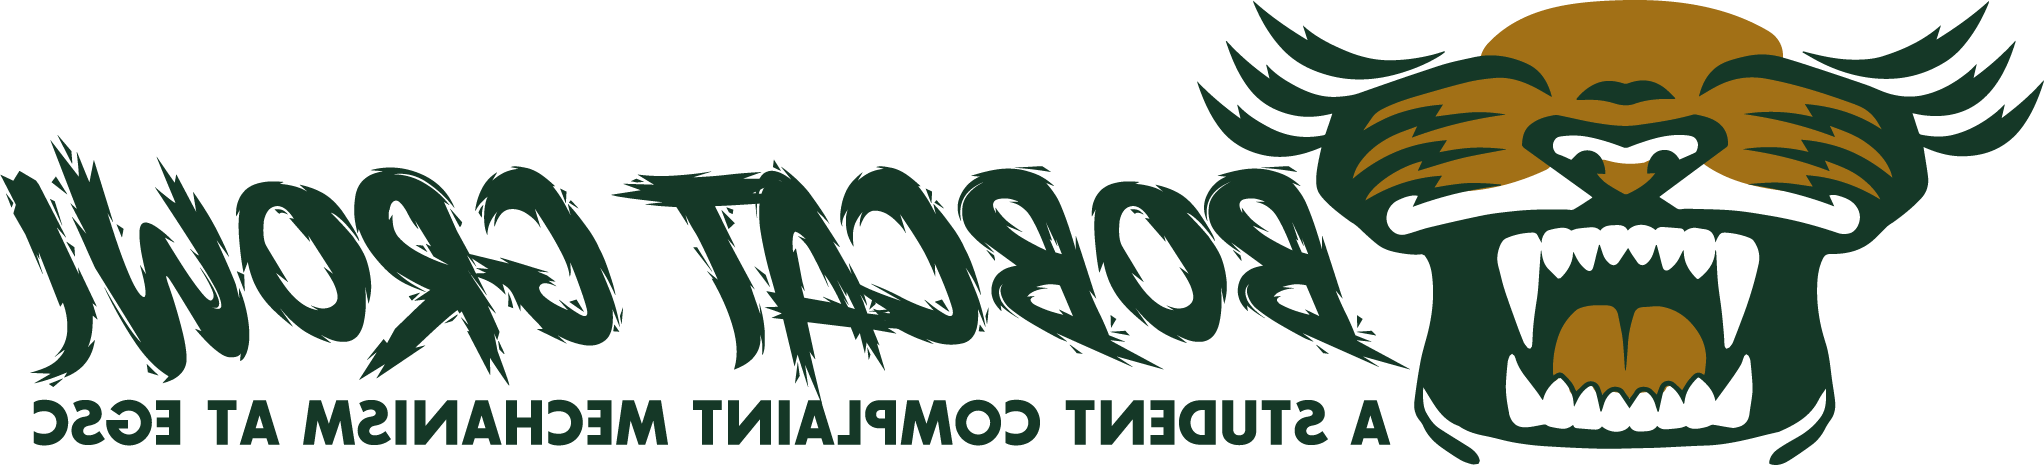 bobcat-growl-logo